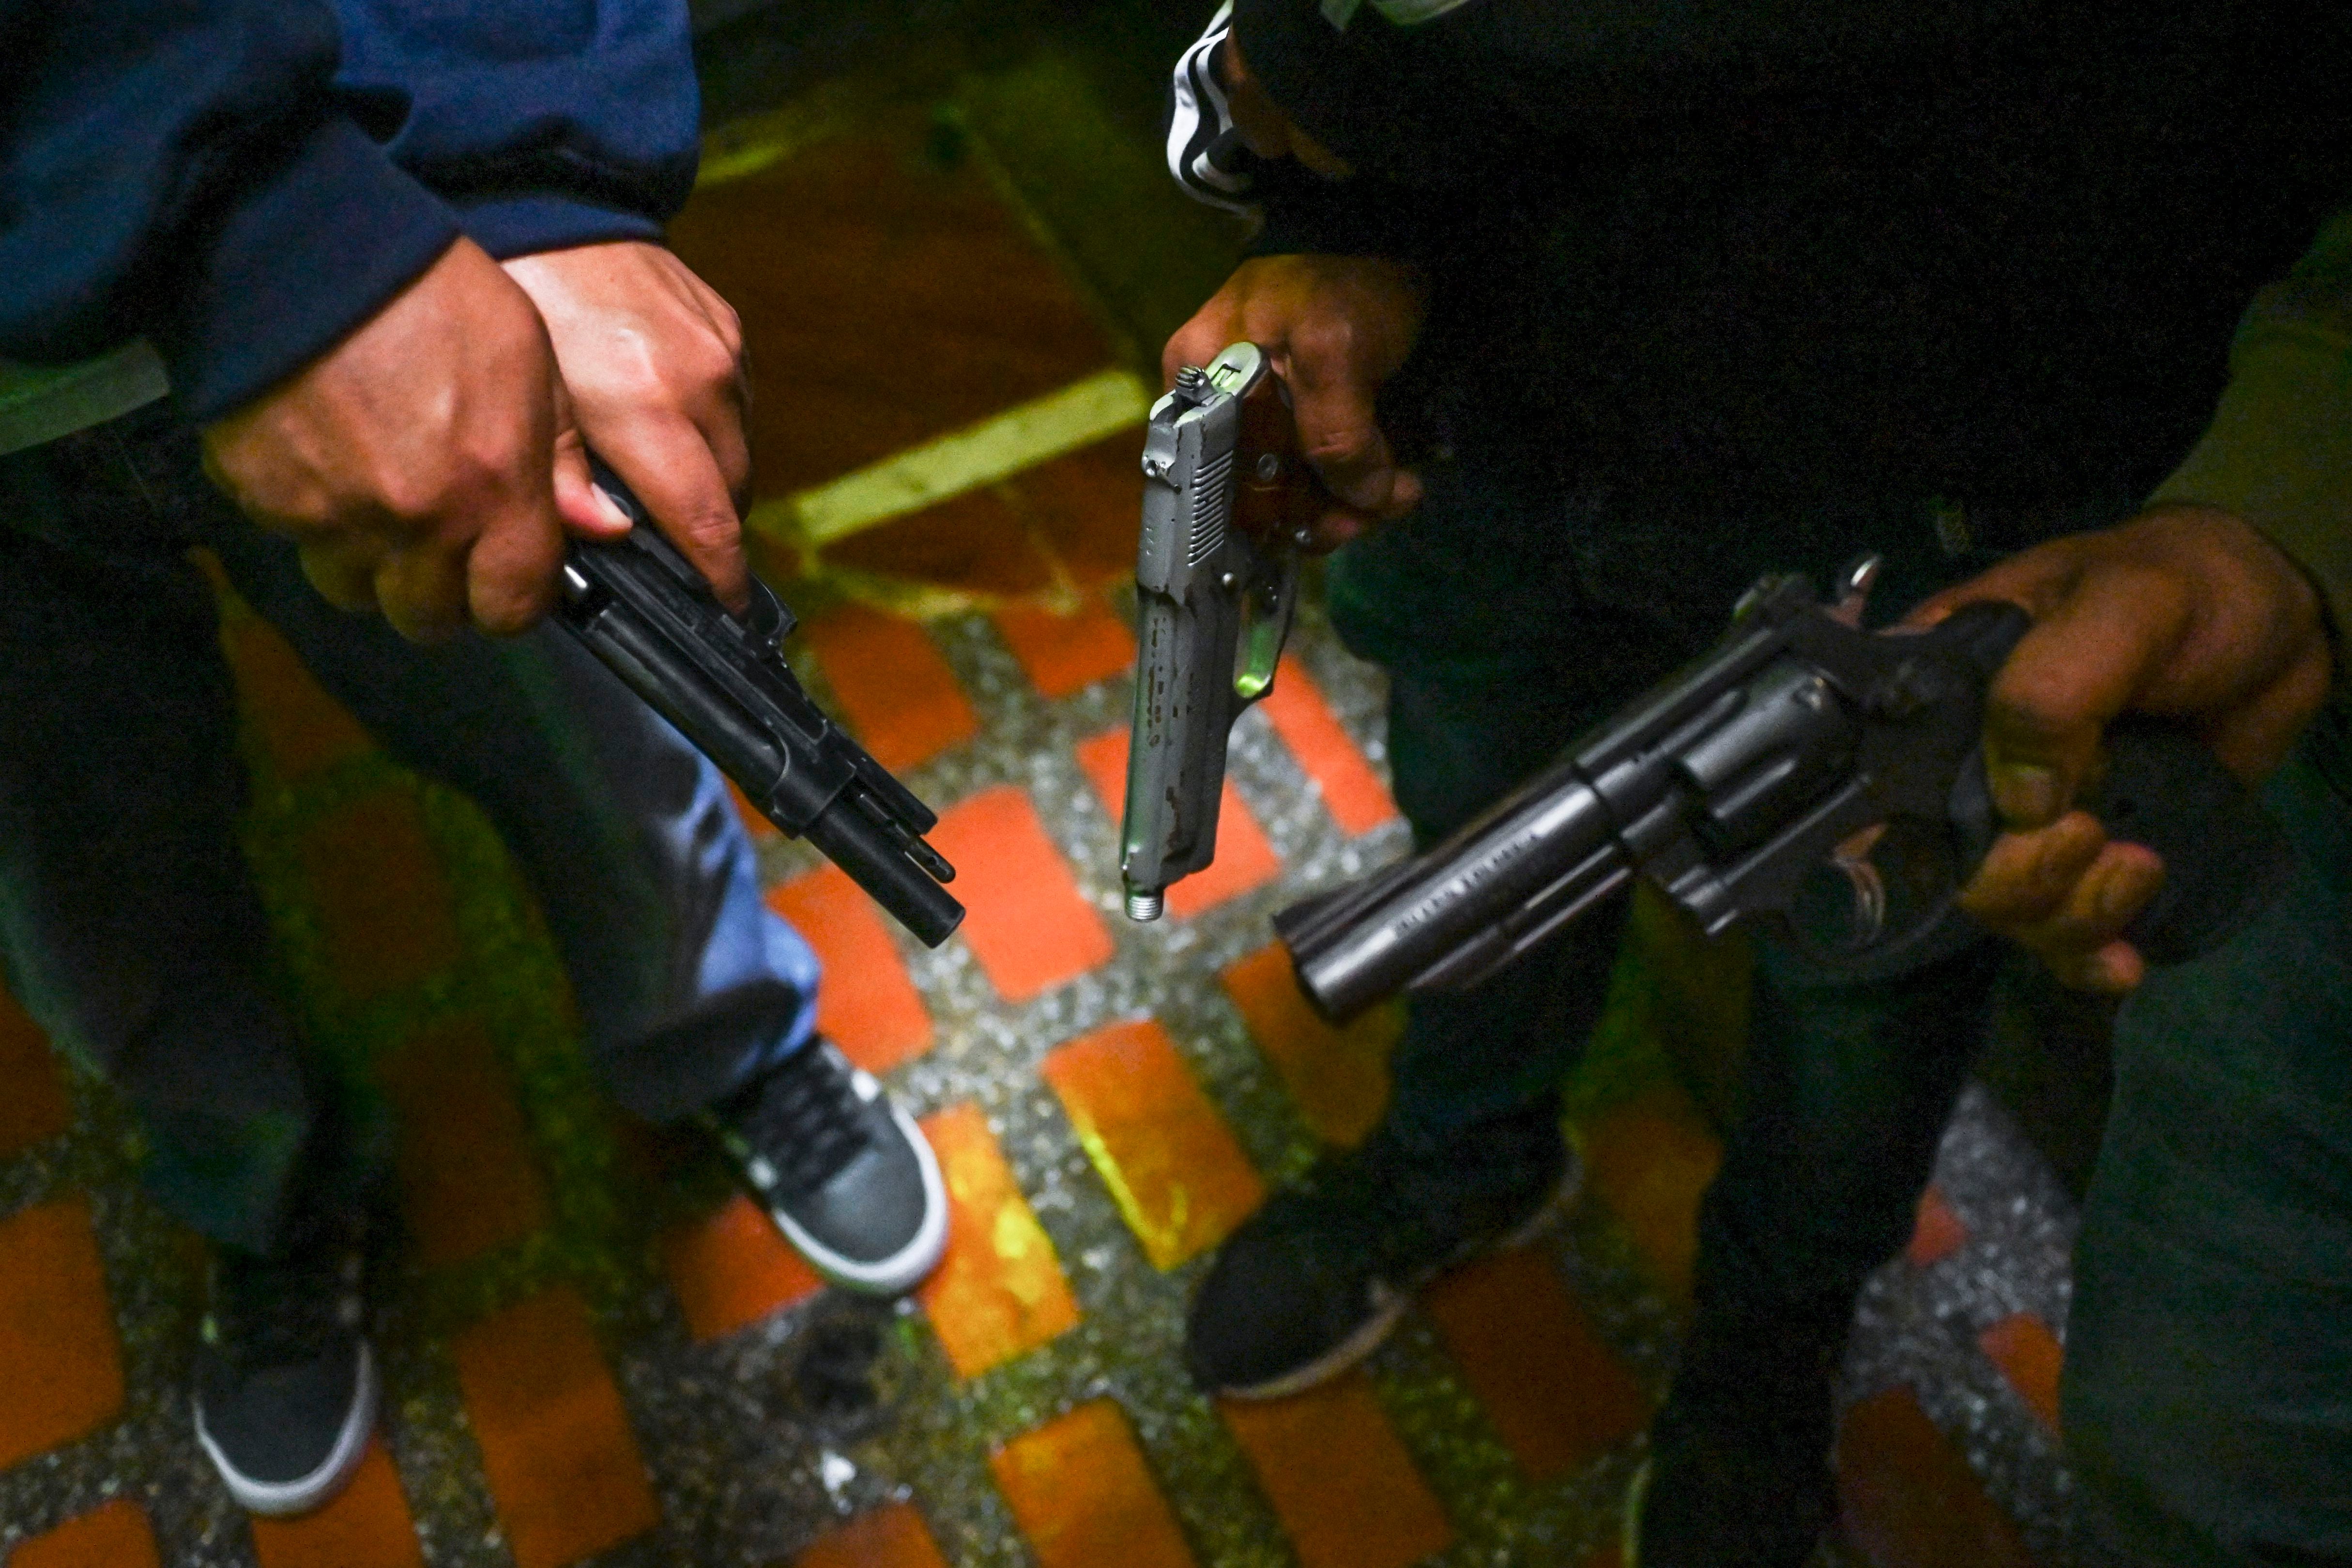 Medellín y un nuevo pacto del fusil entre las bandas criminales